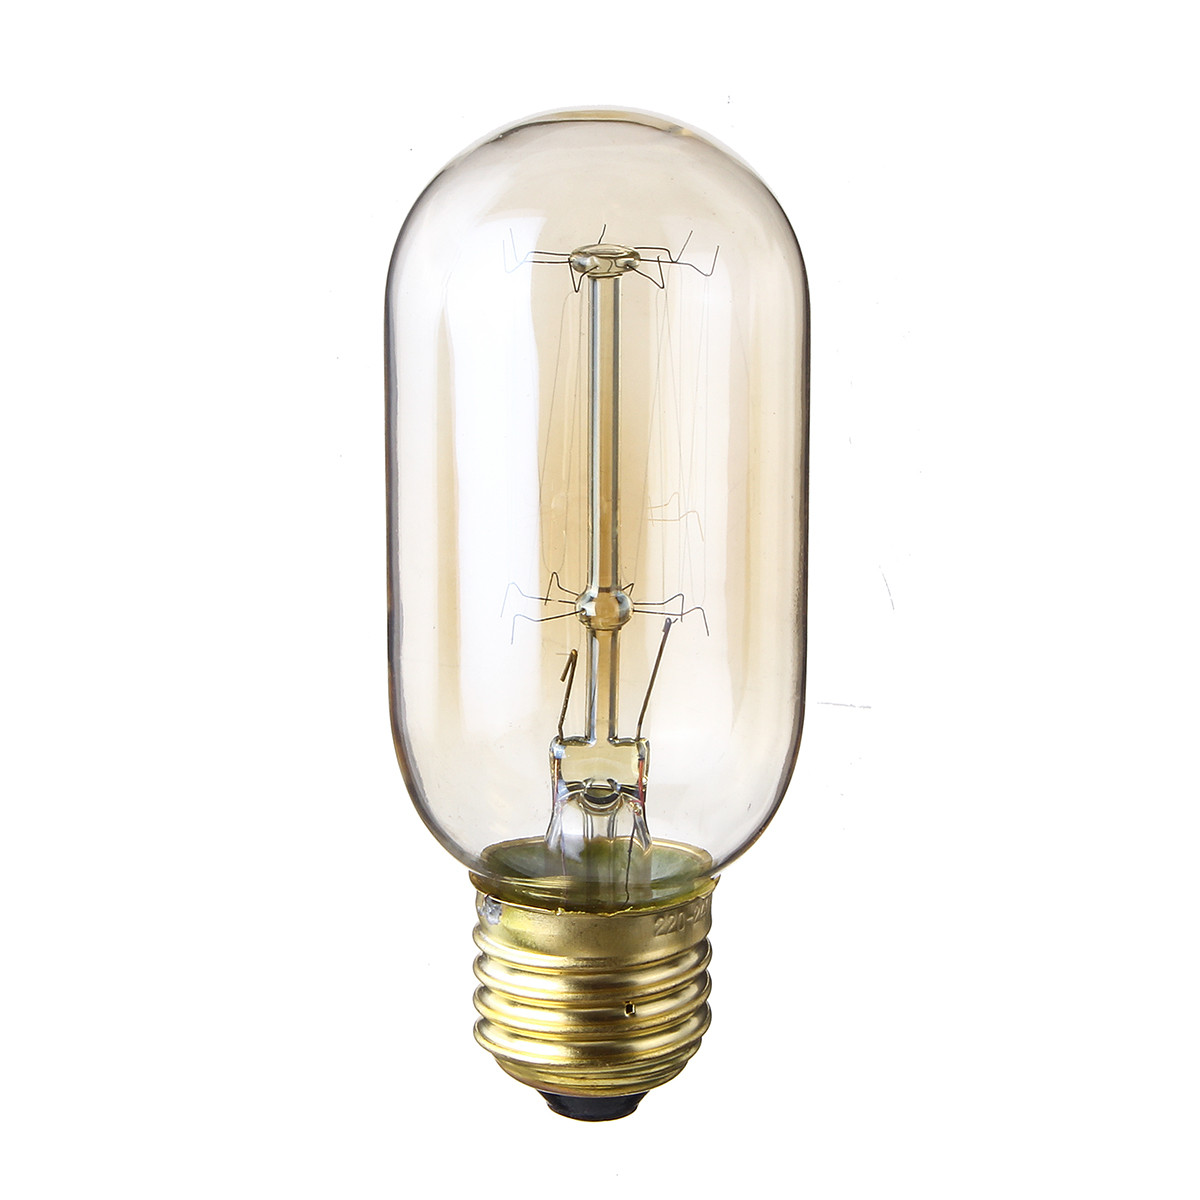 Лампы накаливания Эдисона 40 ватт.  лампы ретро-стиля, ретро лампы, винтажные лампы, старинные лампы